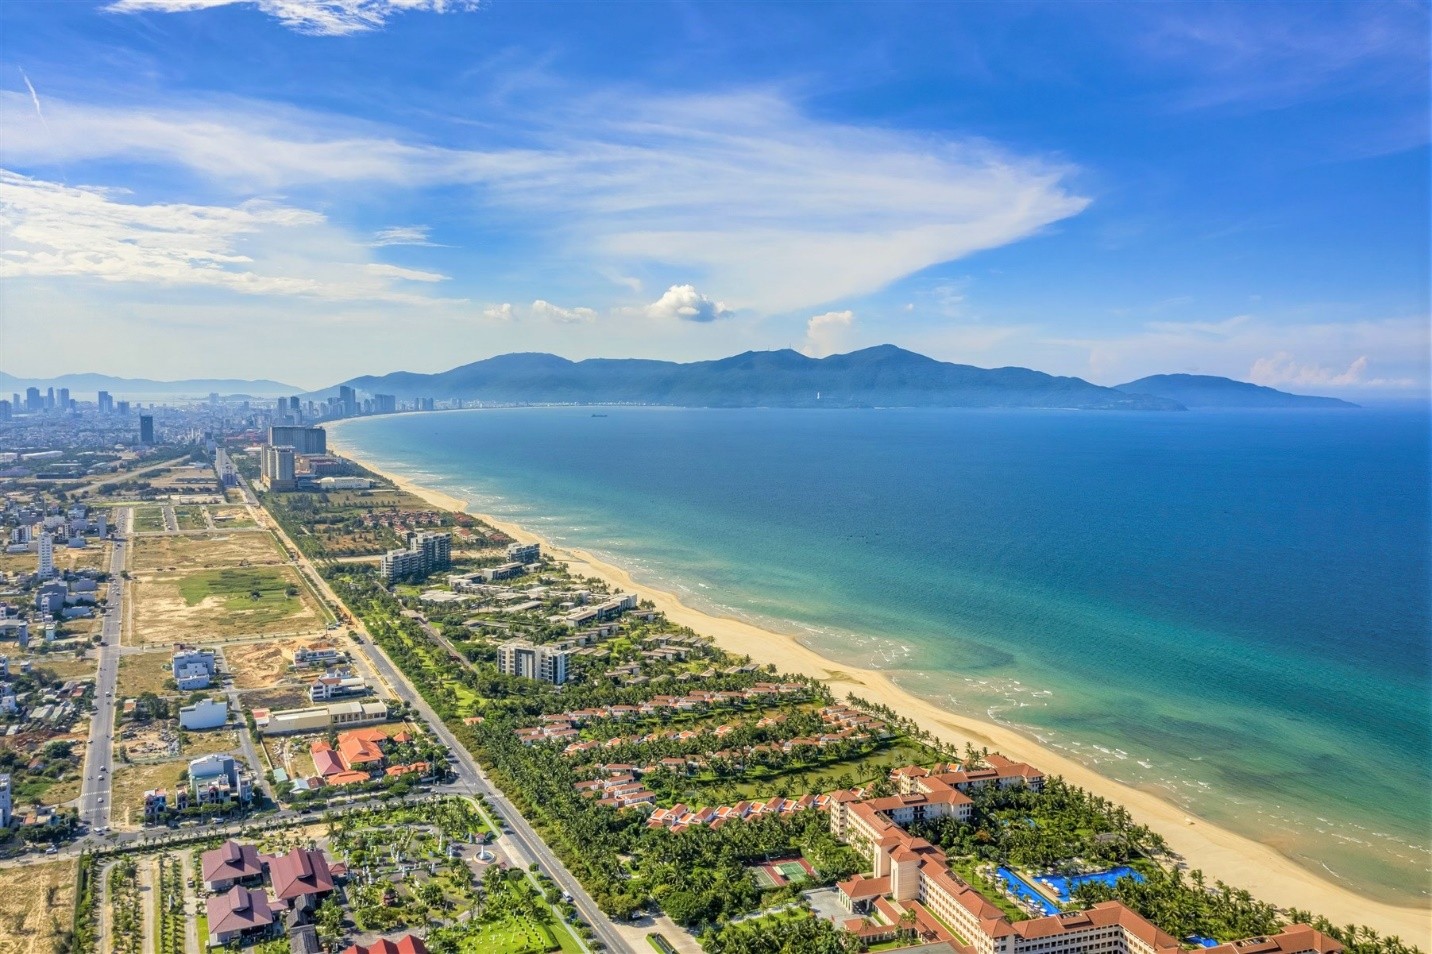 
Giá bất động sản Đà Nẵng có triển vọng tăng lên
